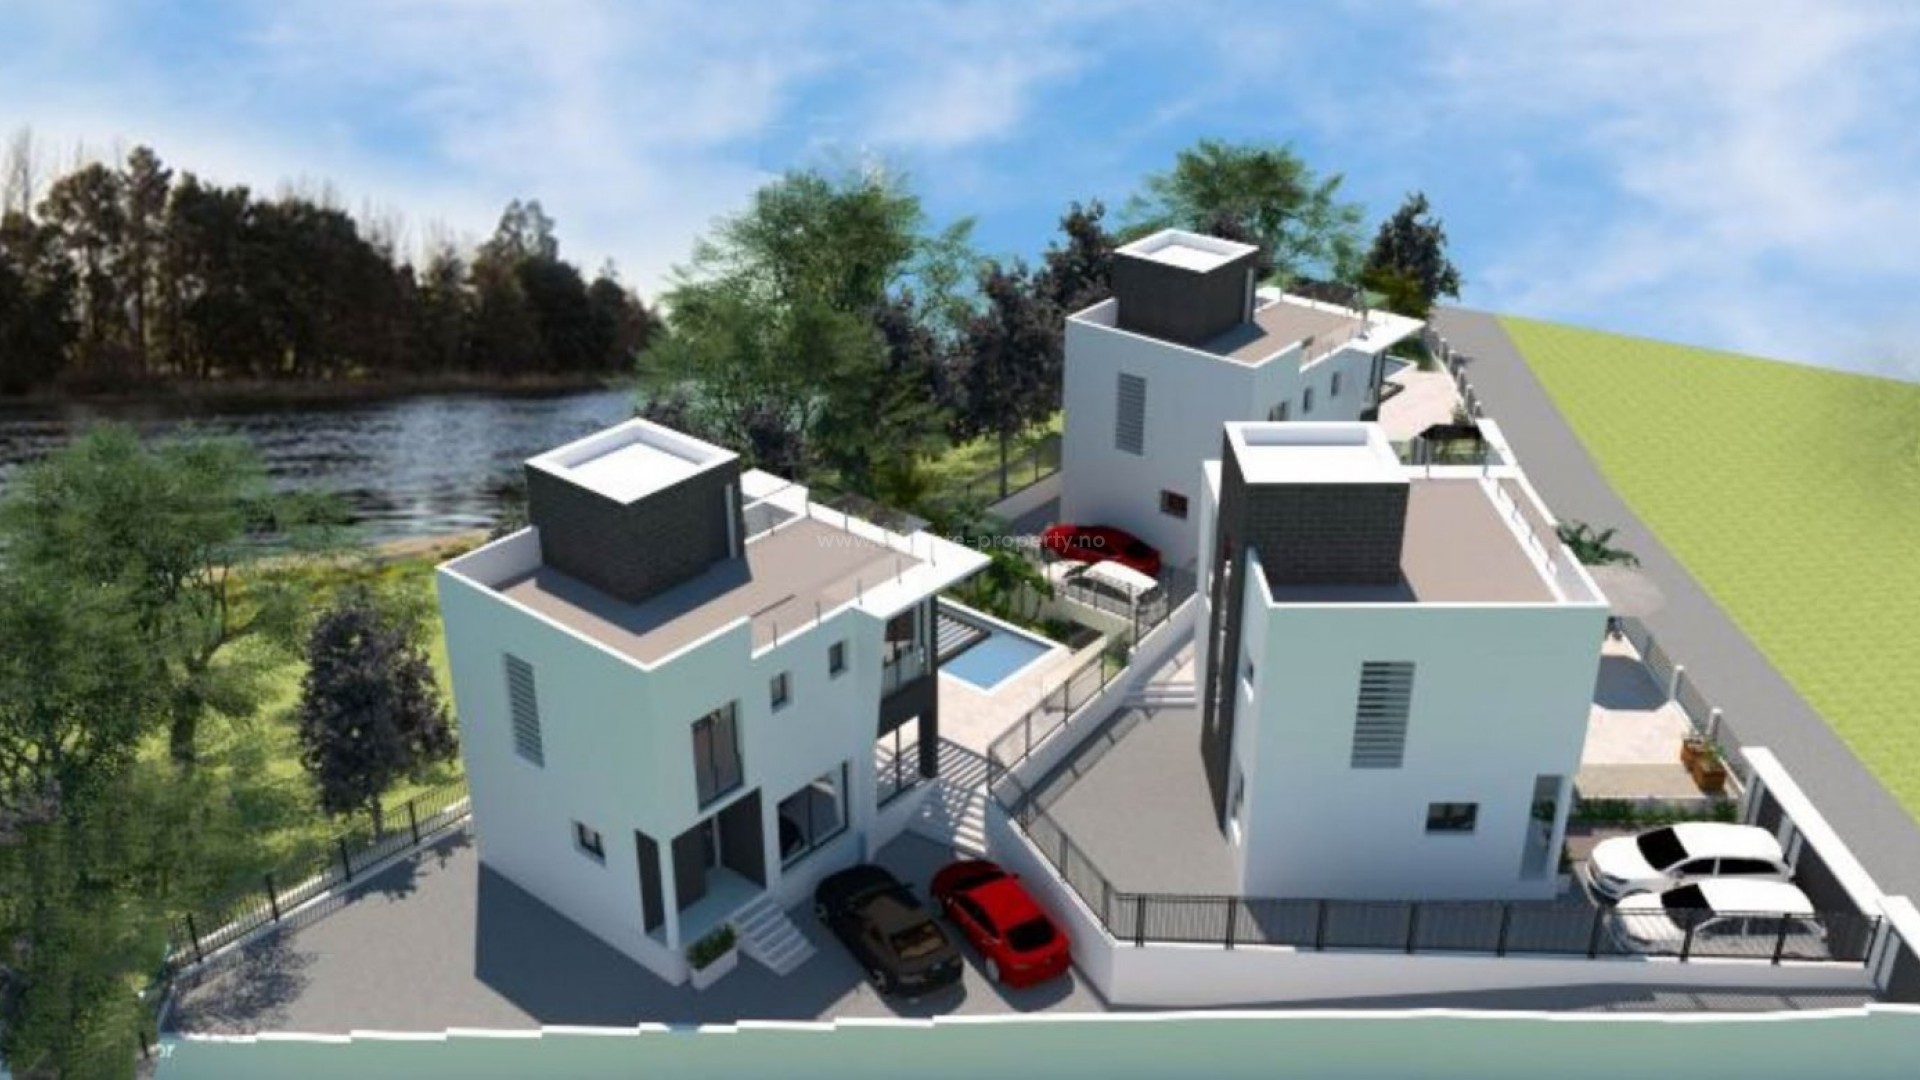 3 moderne villaer/hus i Villajoyosa med havutsikt, 3 soverom, 3 bad, hage, basseng, solarium. Parkeringsplass for 2 biler.Mulighet for kjeller i tillegg.